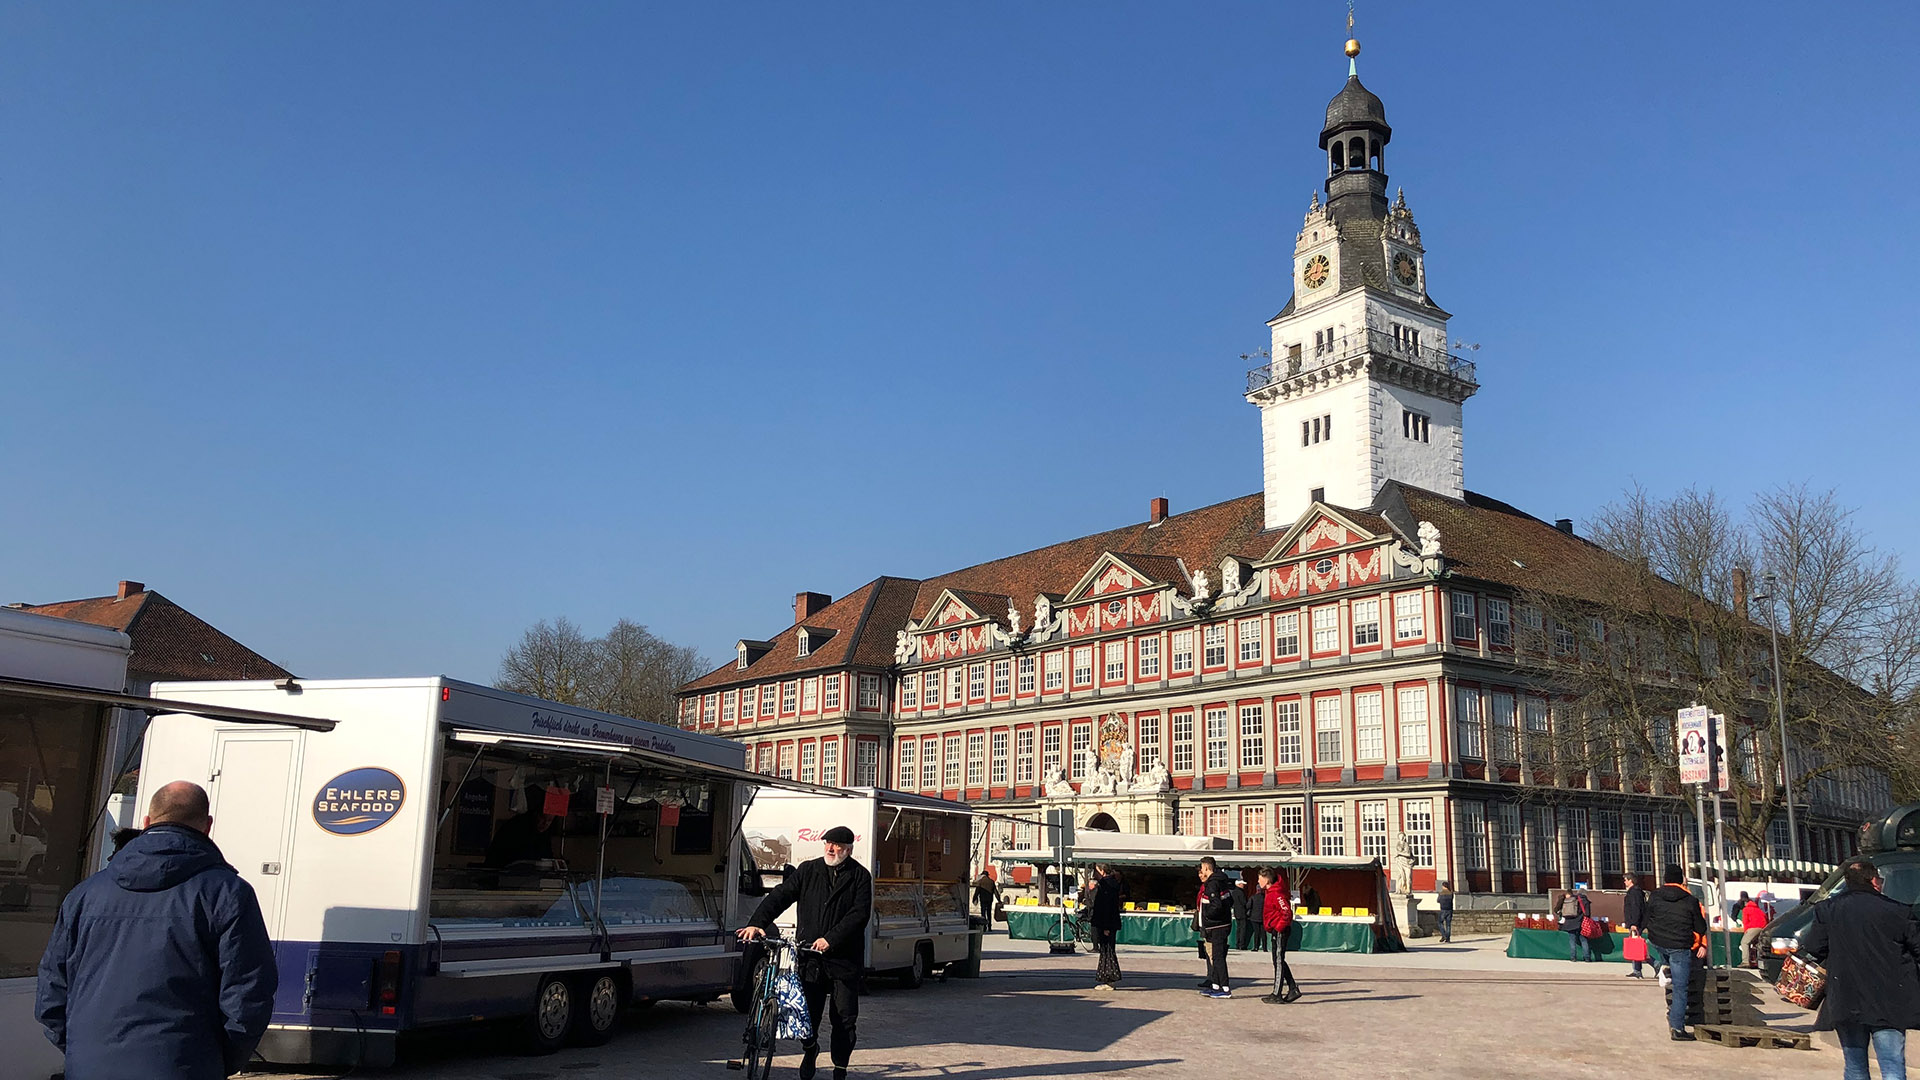 Vor dem Wolfenbütteler Schloss ist der Wochenmarkt aufgebaut. Mit großem Abstand (wegen Covid-19) sind rechts und links Marktstände aufgebaut, Kunden bewegen sich in den breiten Gängen dazwischen.